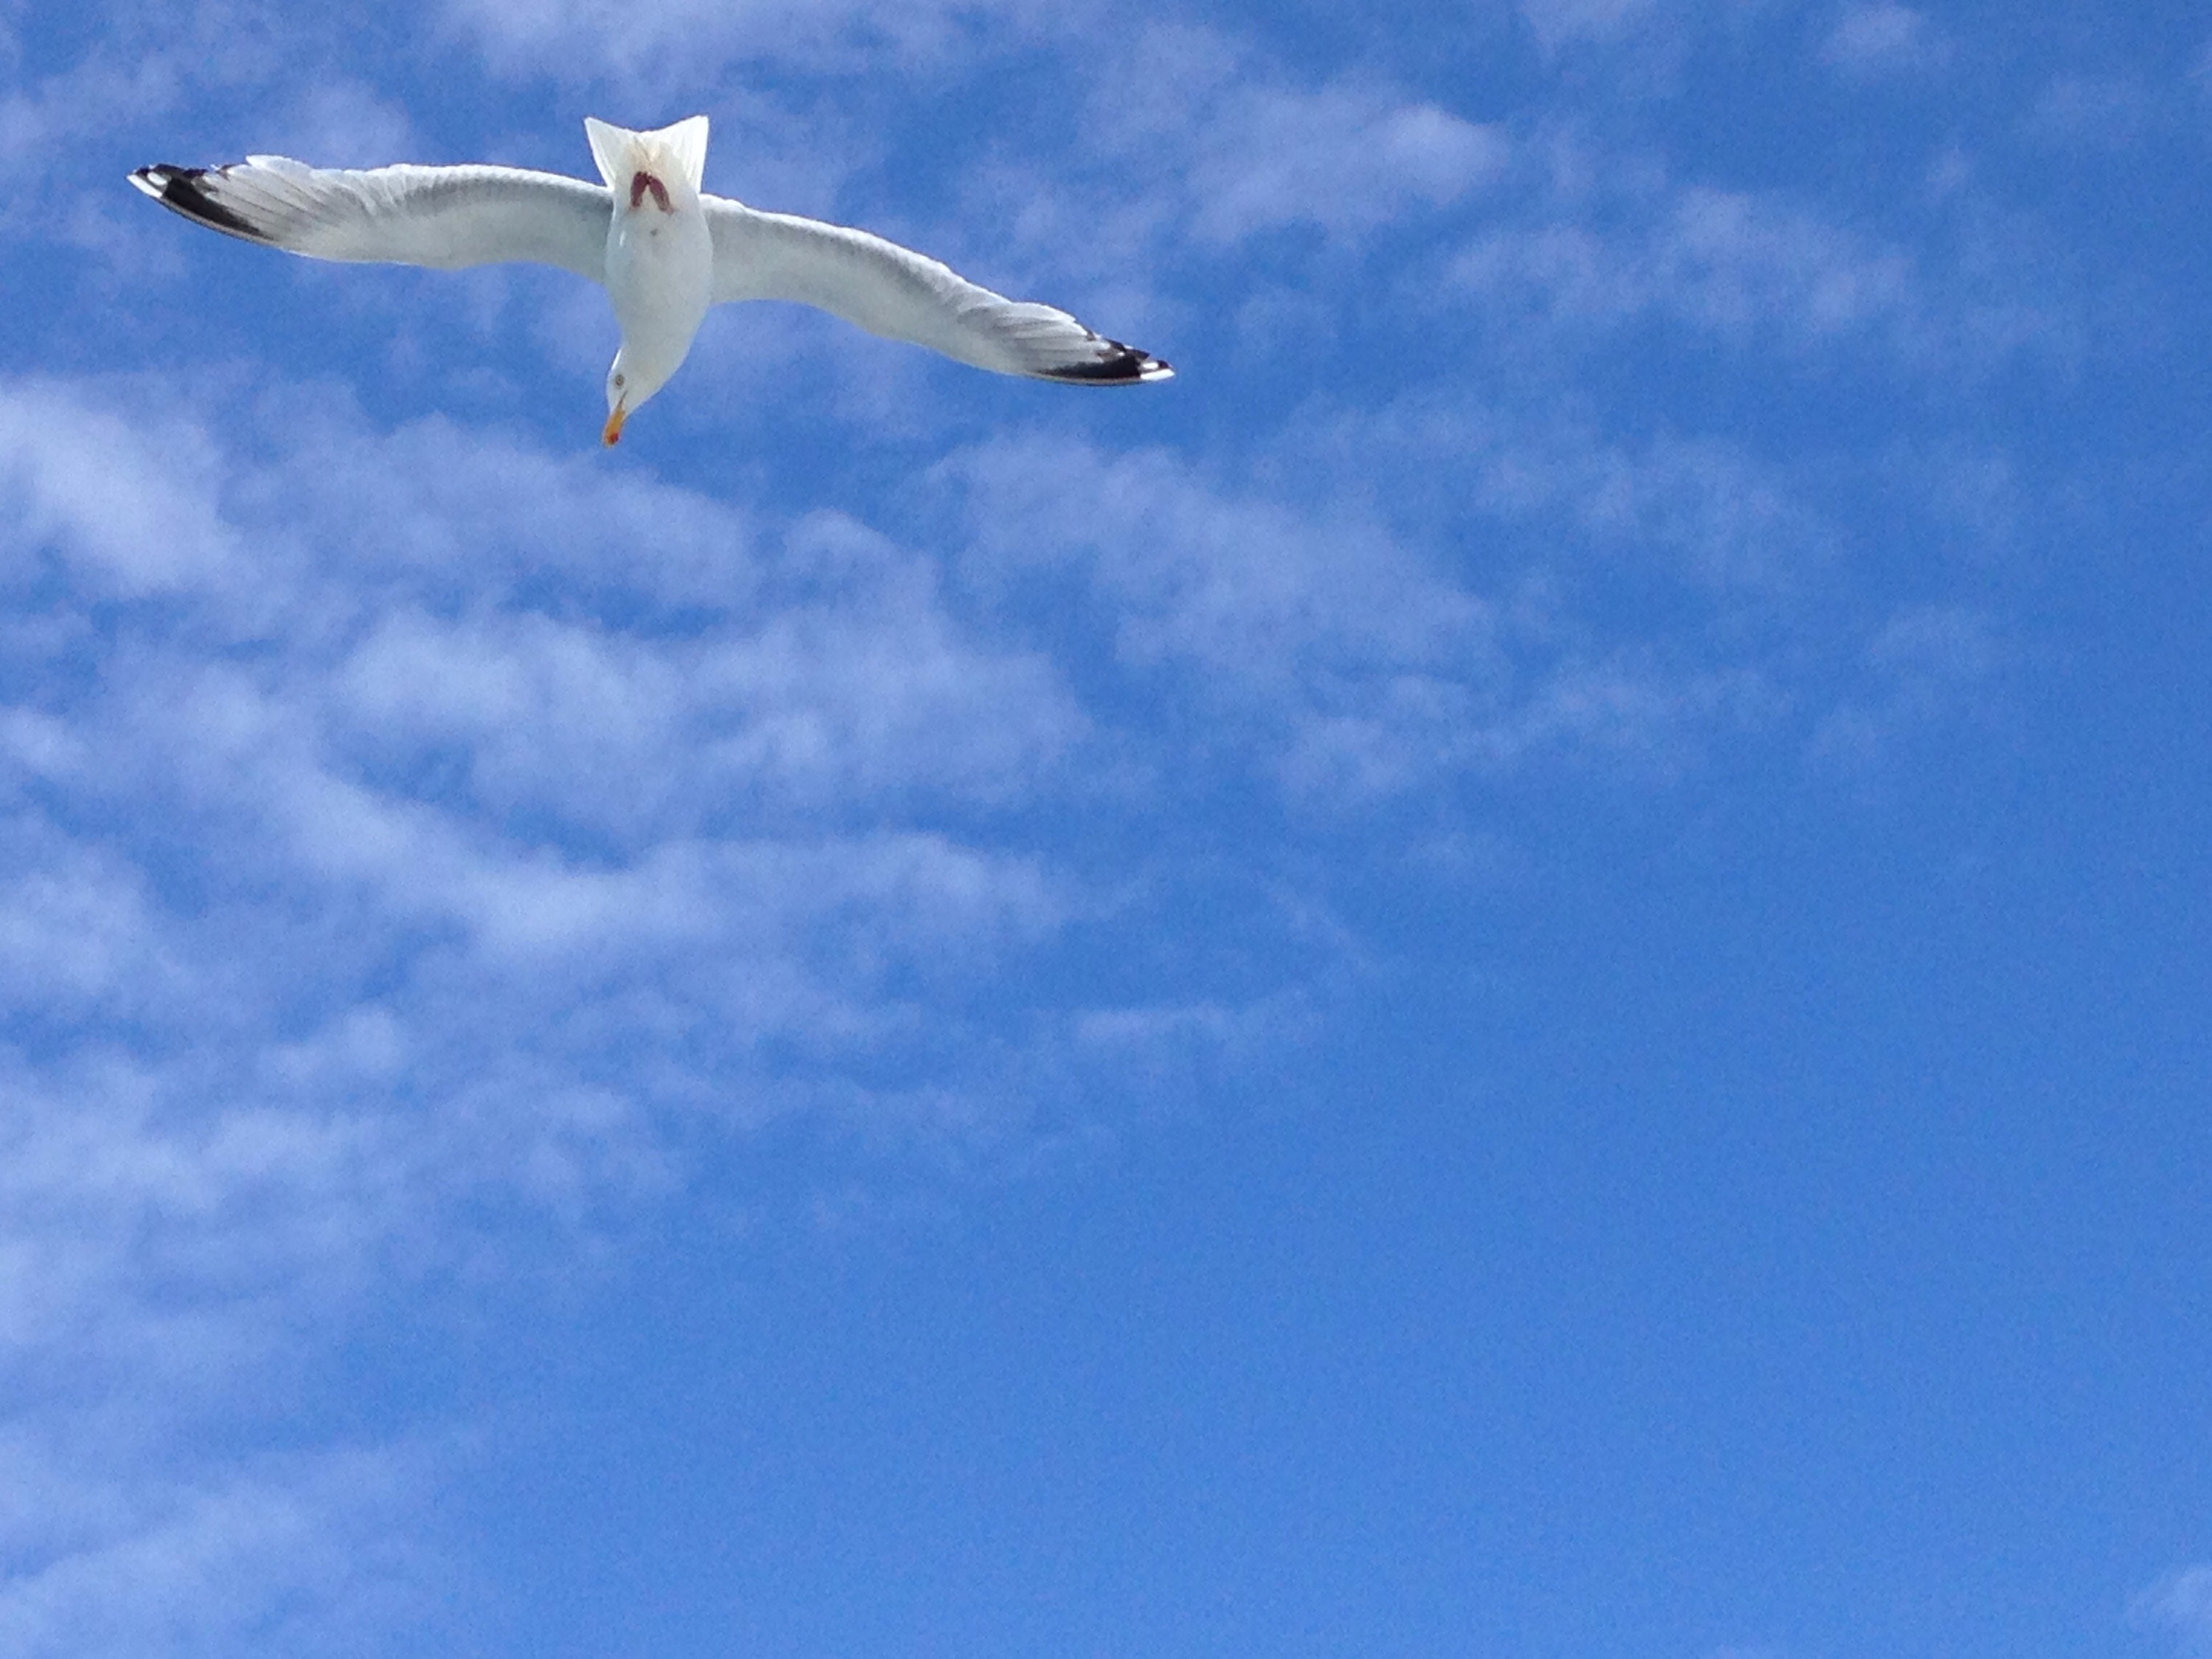 Flying gull